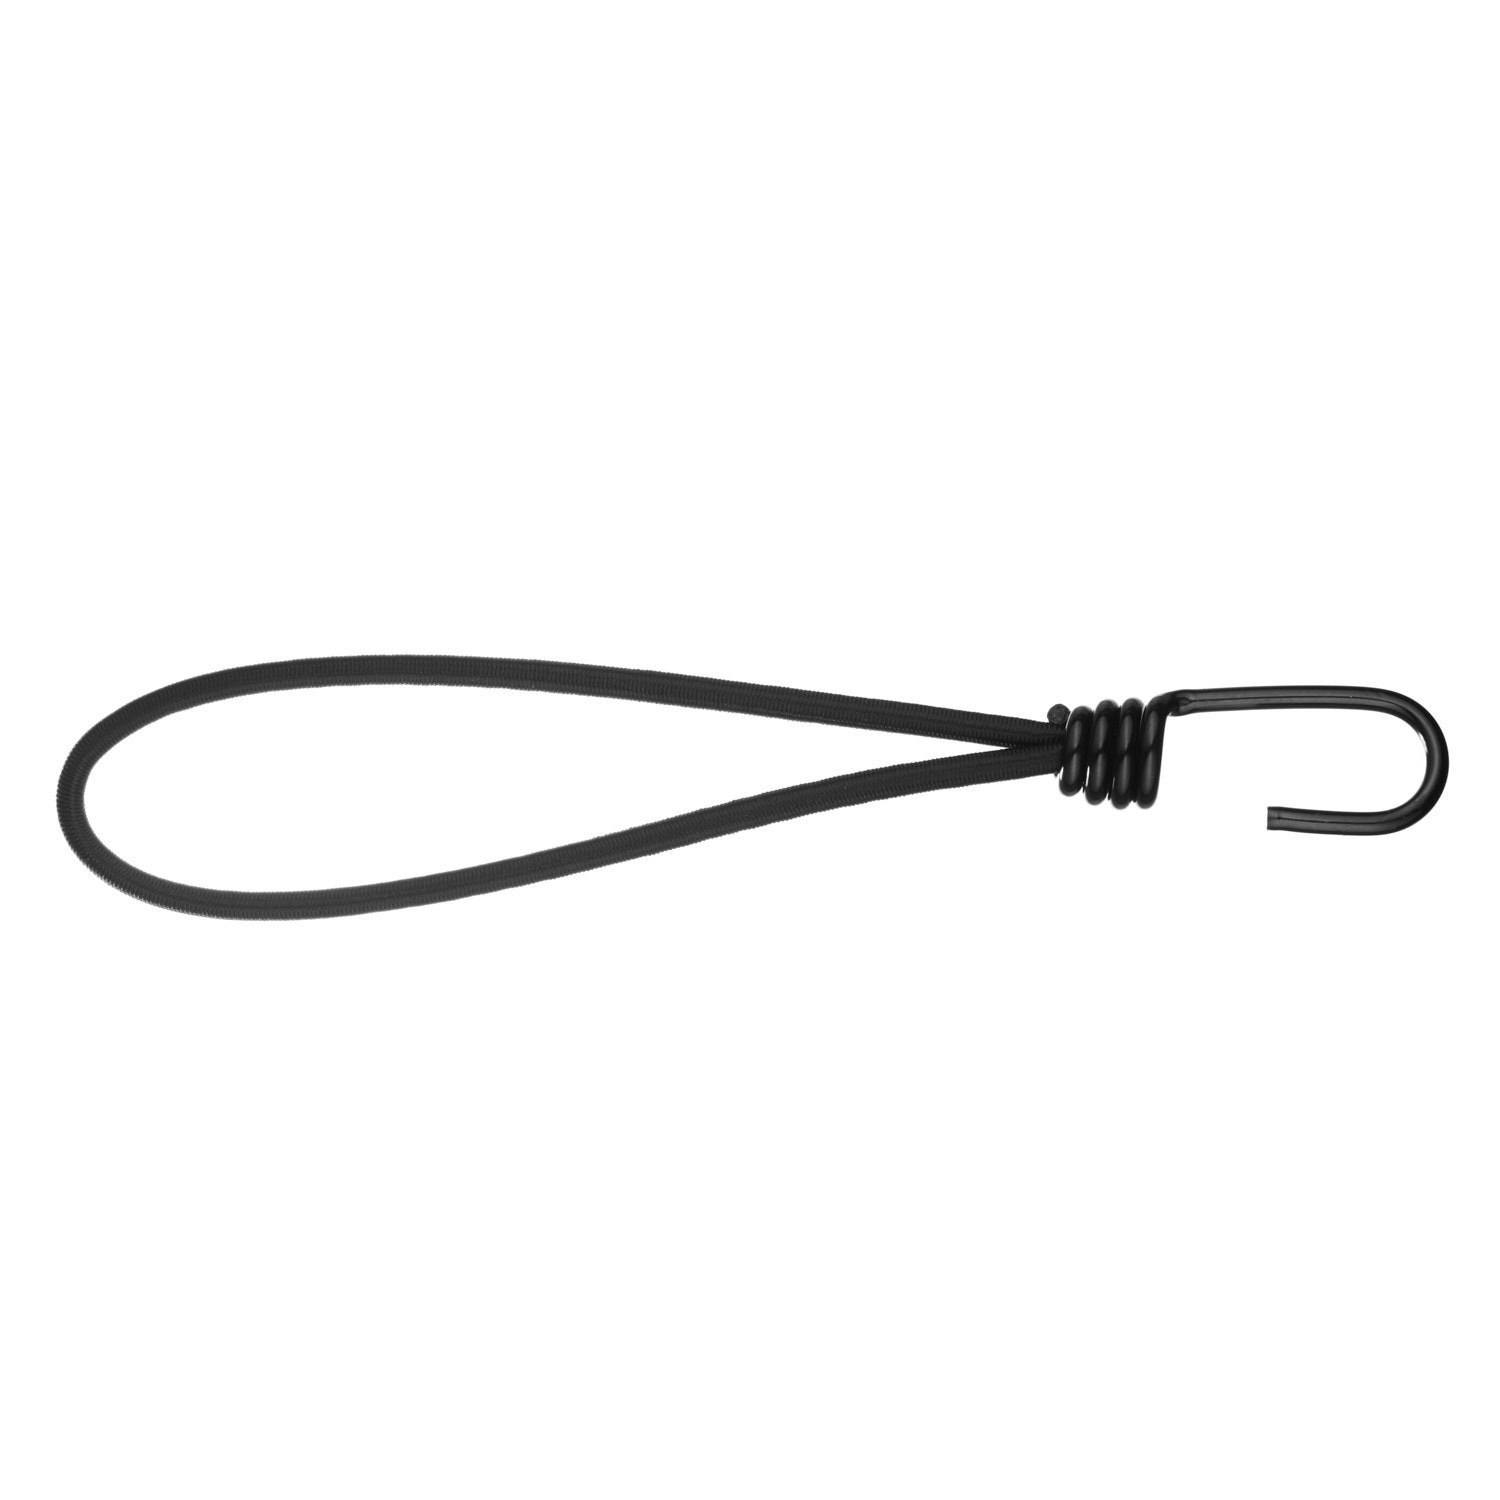 Elastic Metal Hook Loop Ties MHL PE114 BLK Kalsi Cords 2